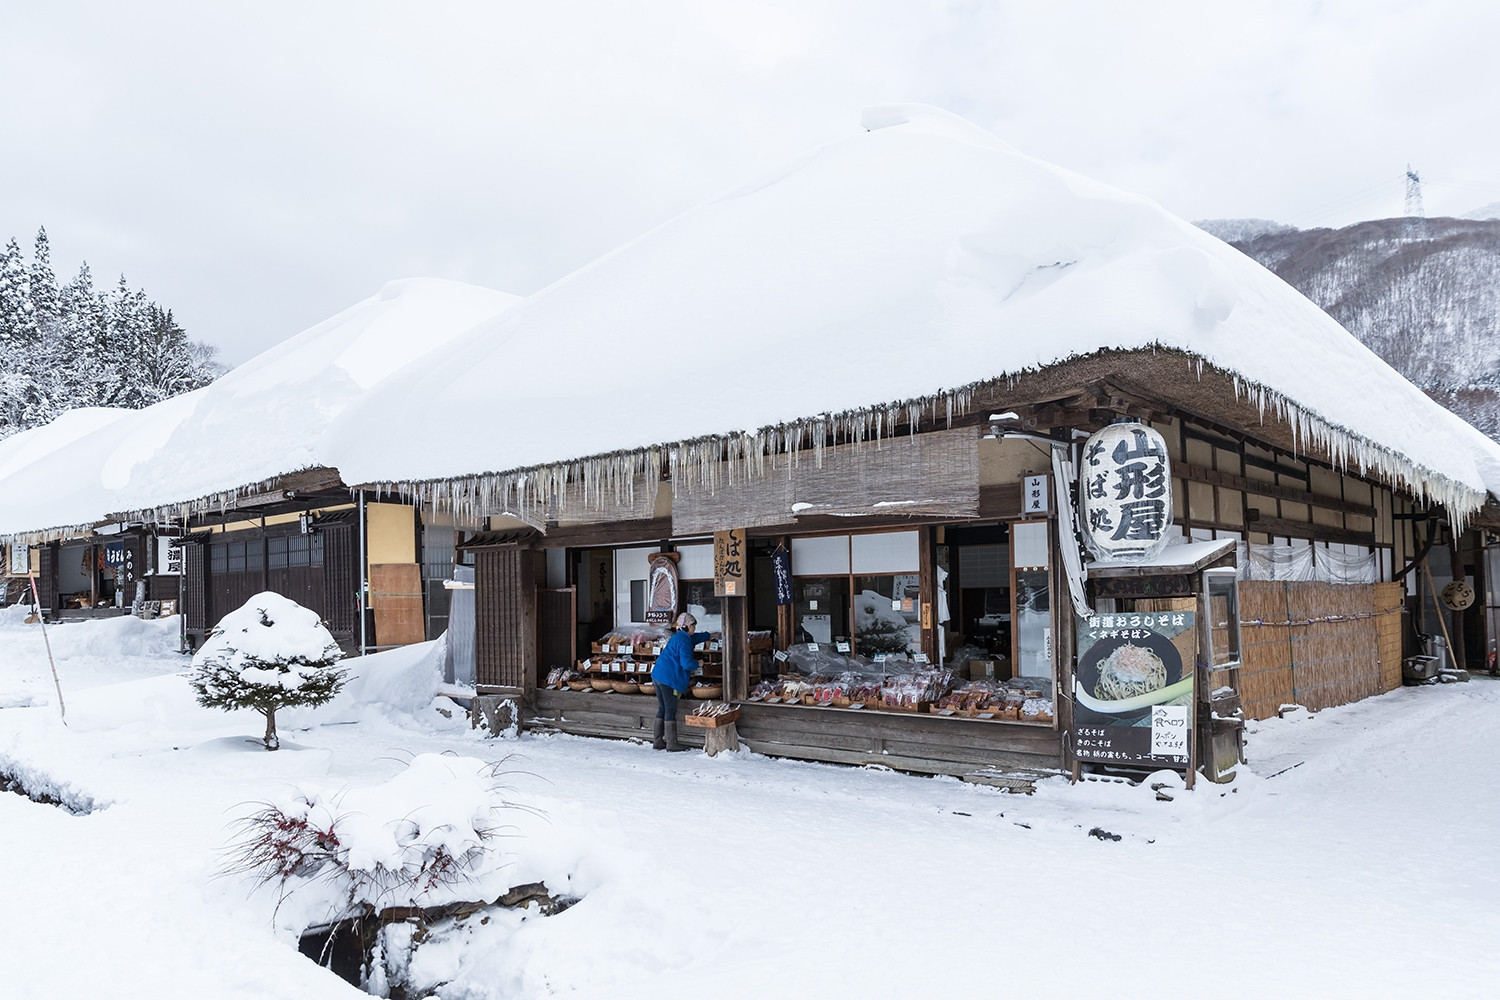 Ngôi làng cổ phủ tuyết như cổ tích. Ảnh: Sakarin Sawasdinaka/Shutterstock.